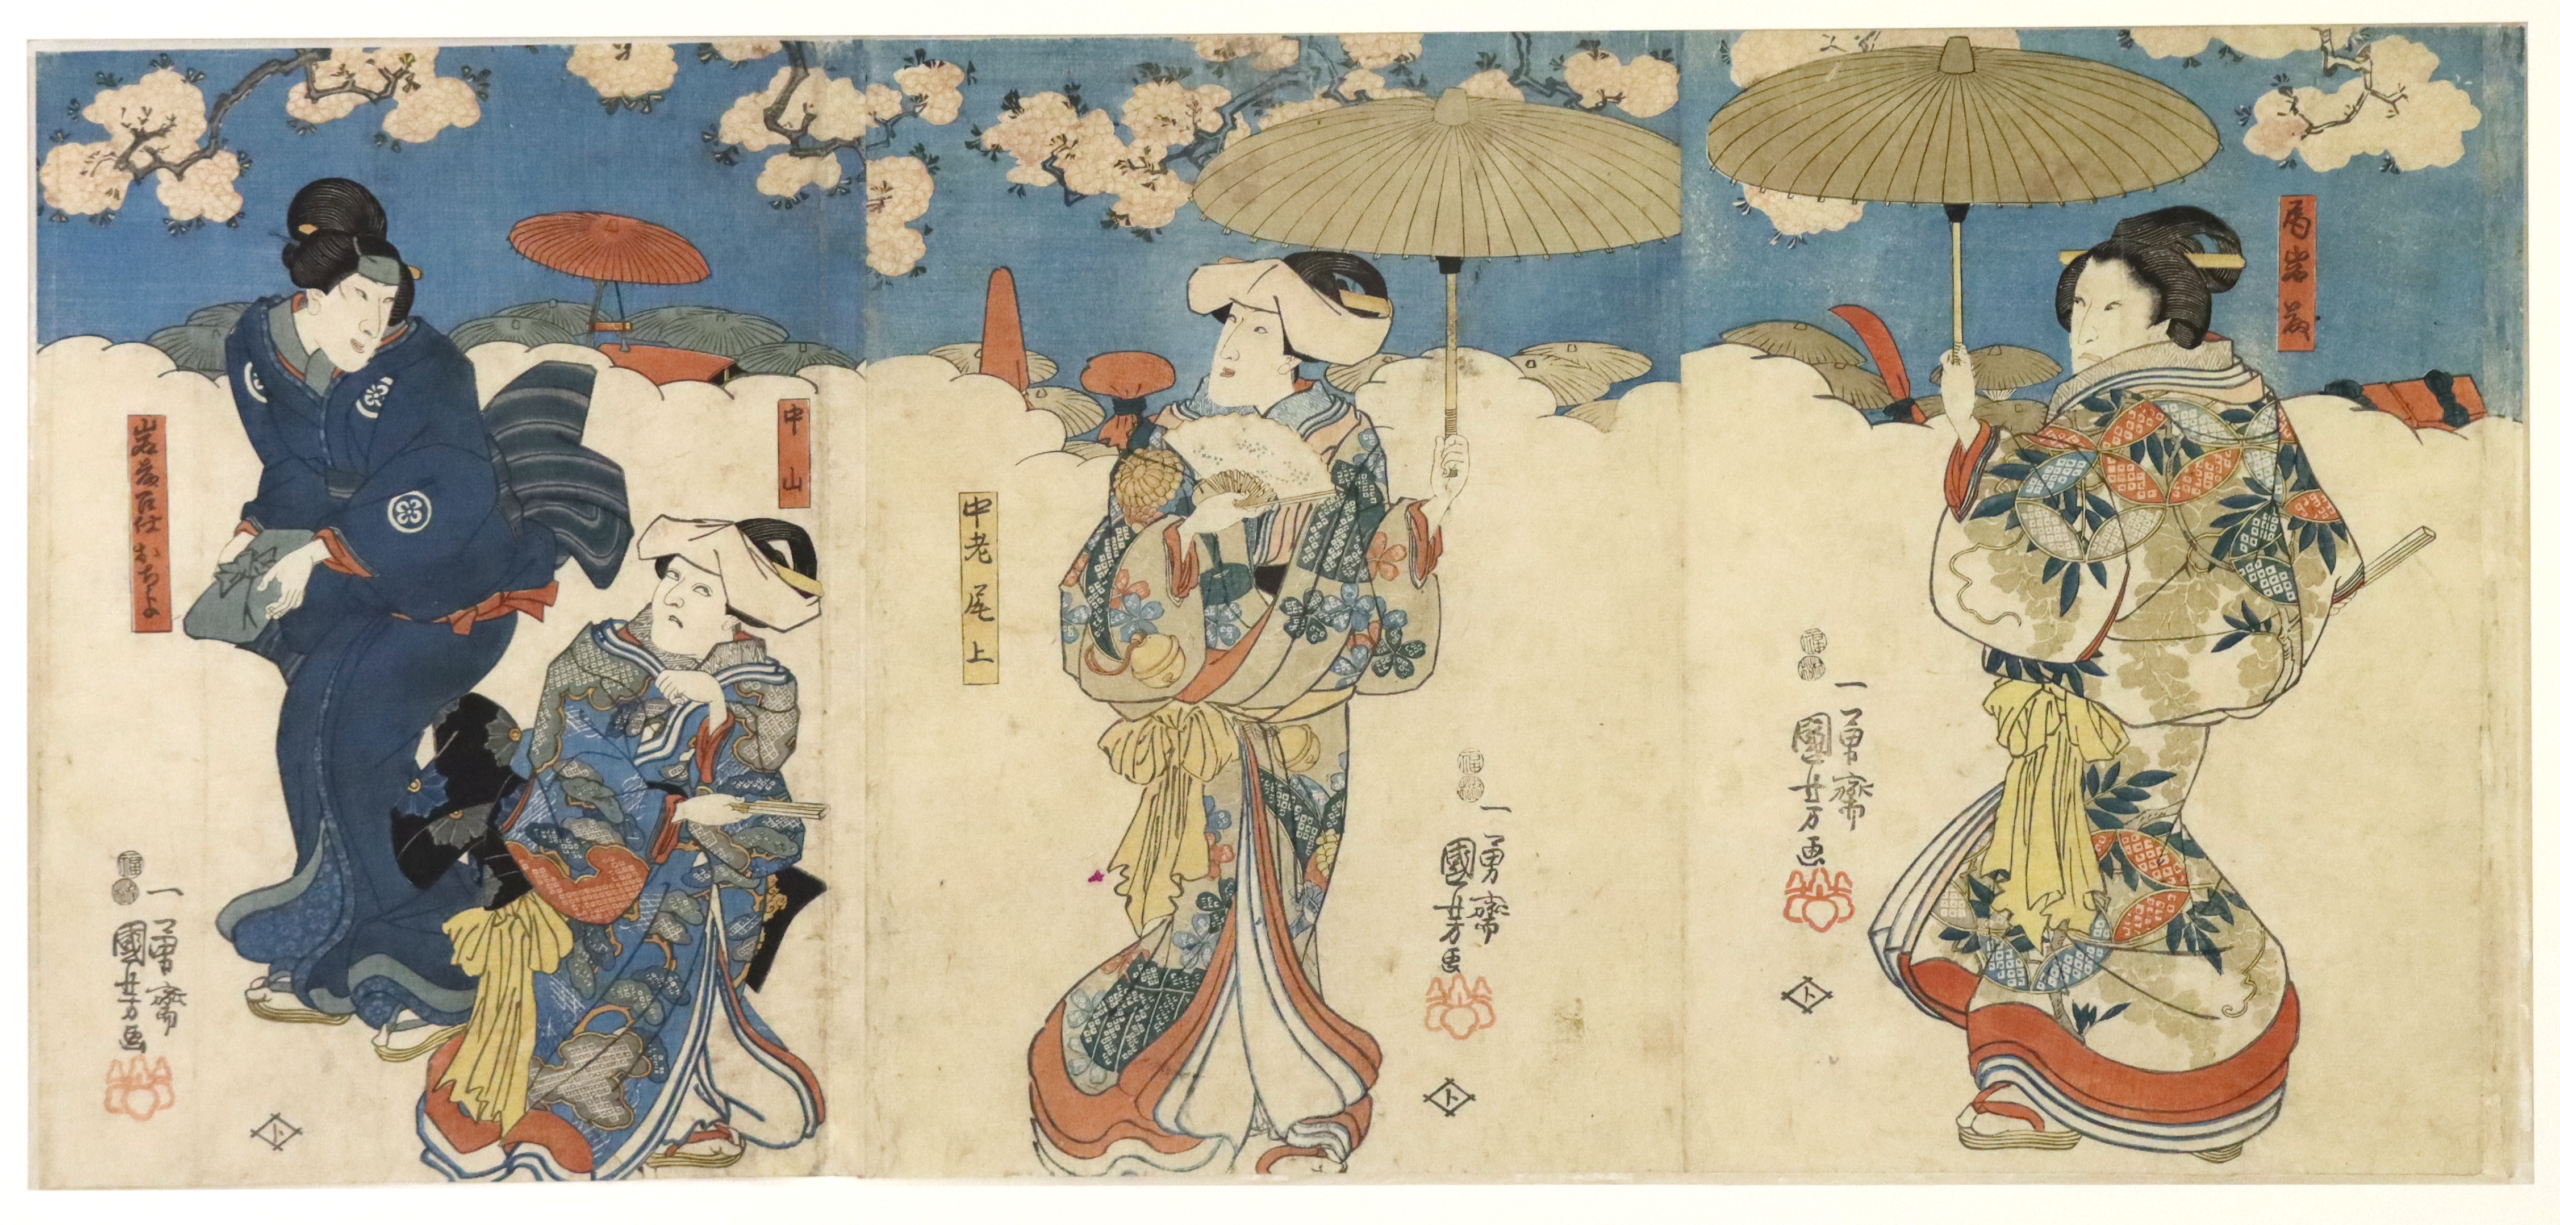 Acteurs, trois gravures sur bois au format oban tate-e, circa 1847-52